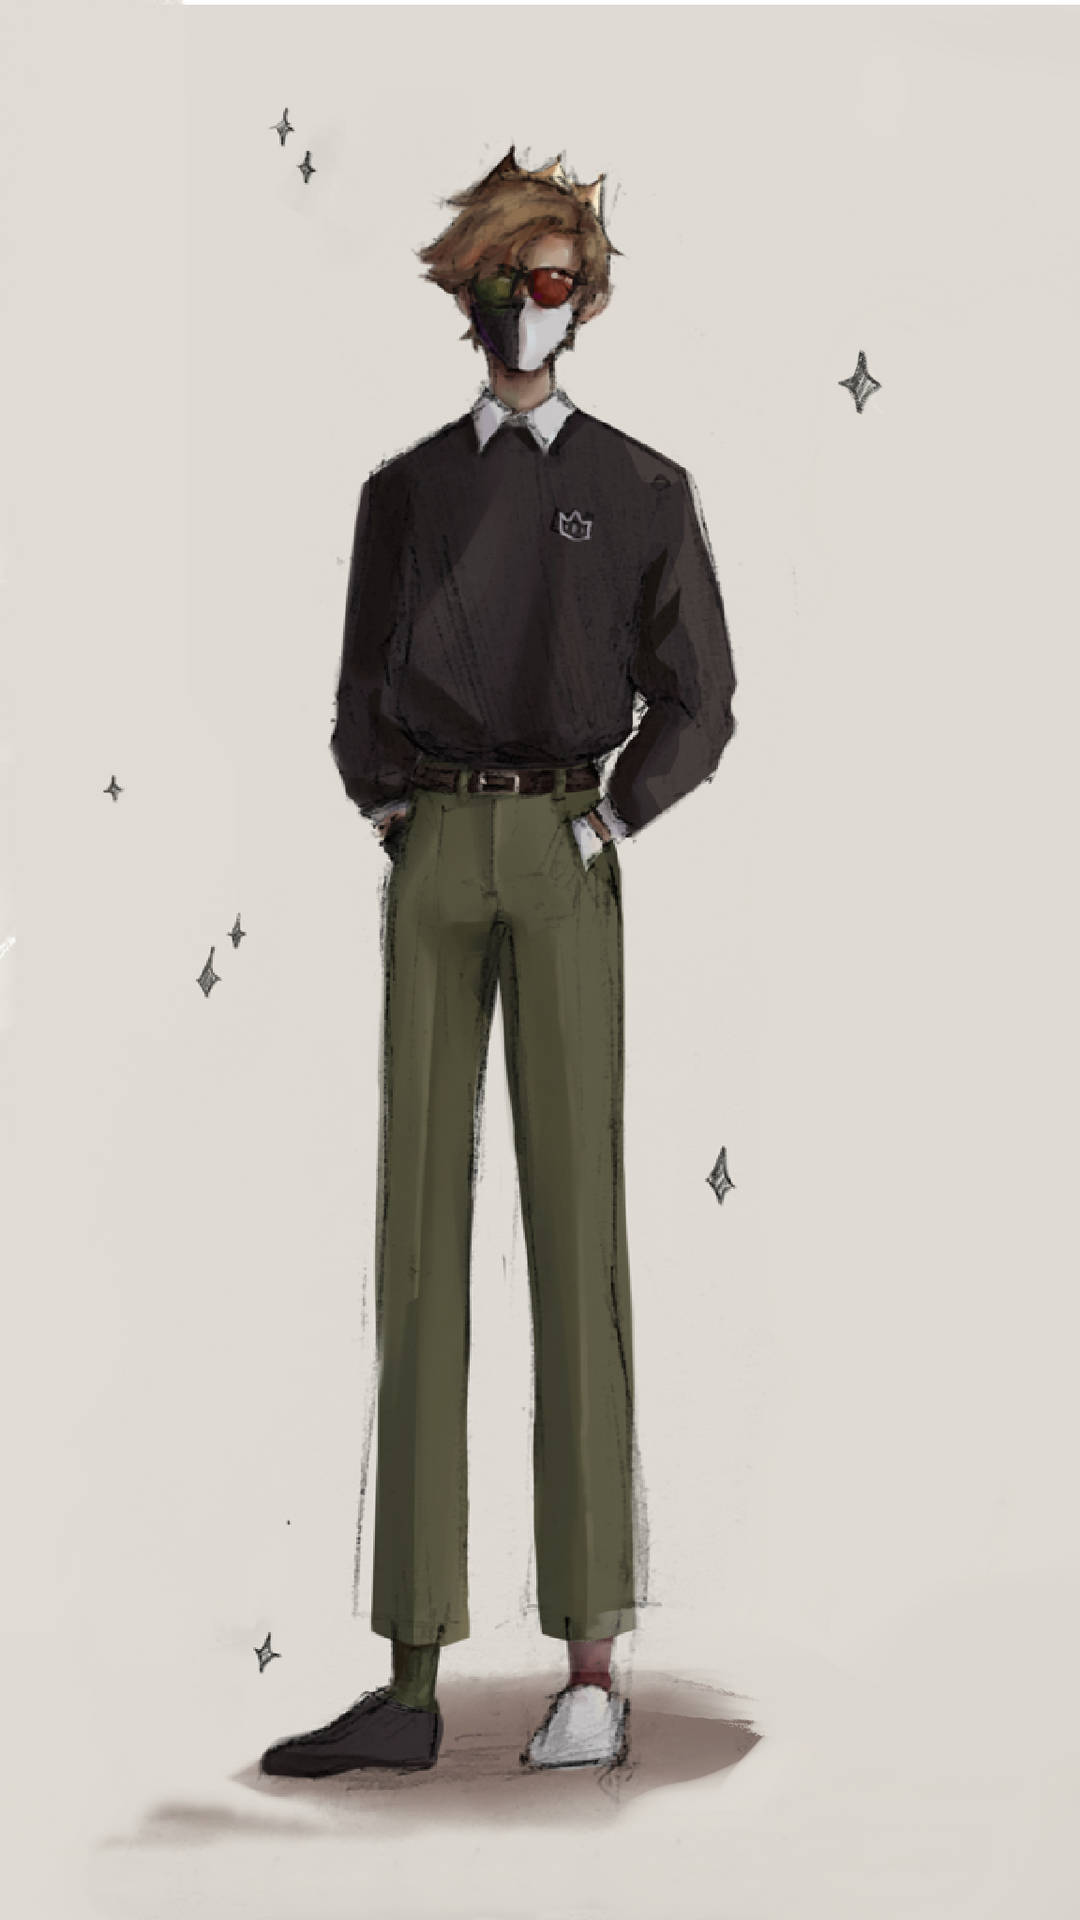 Et tegning af en mand i en sort skjorte og grønne bukser. Wallpaper